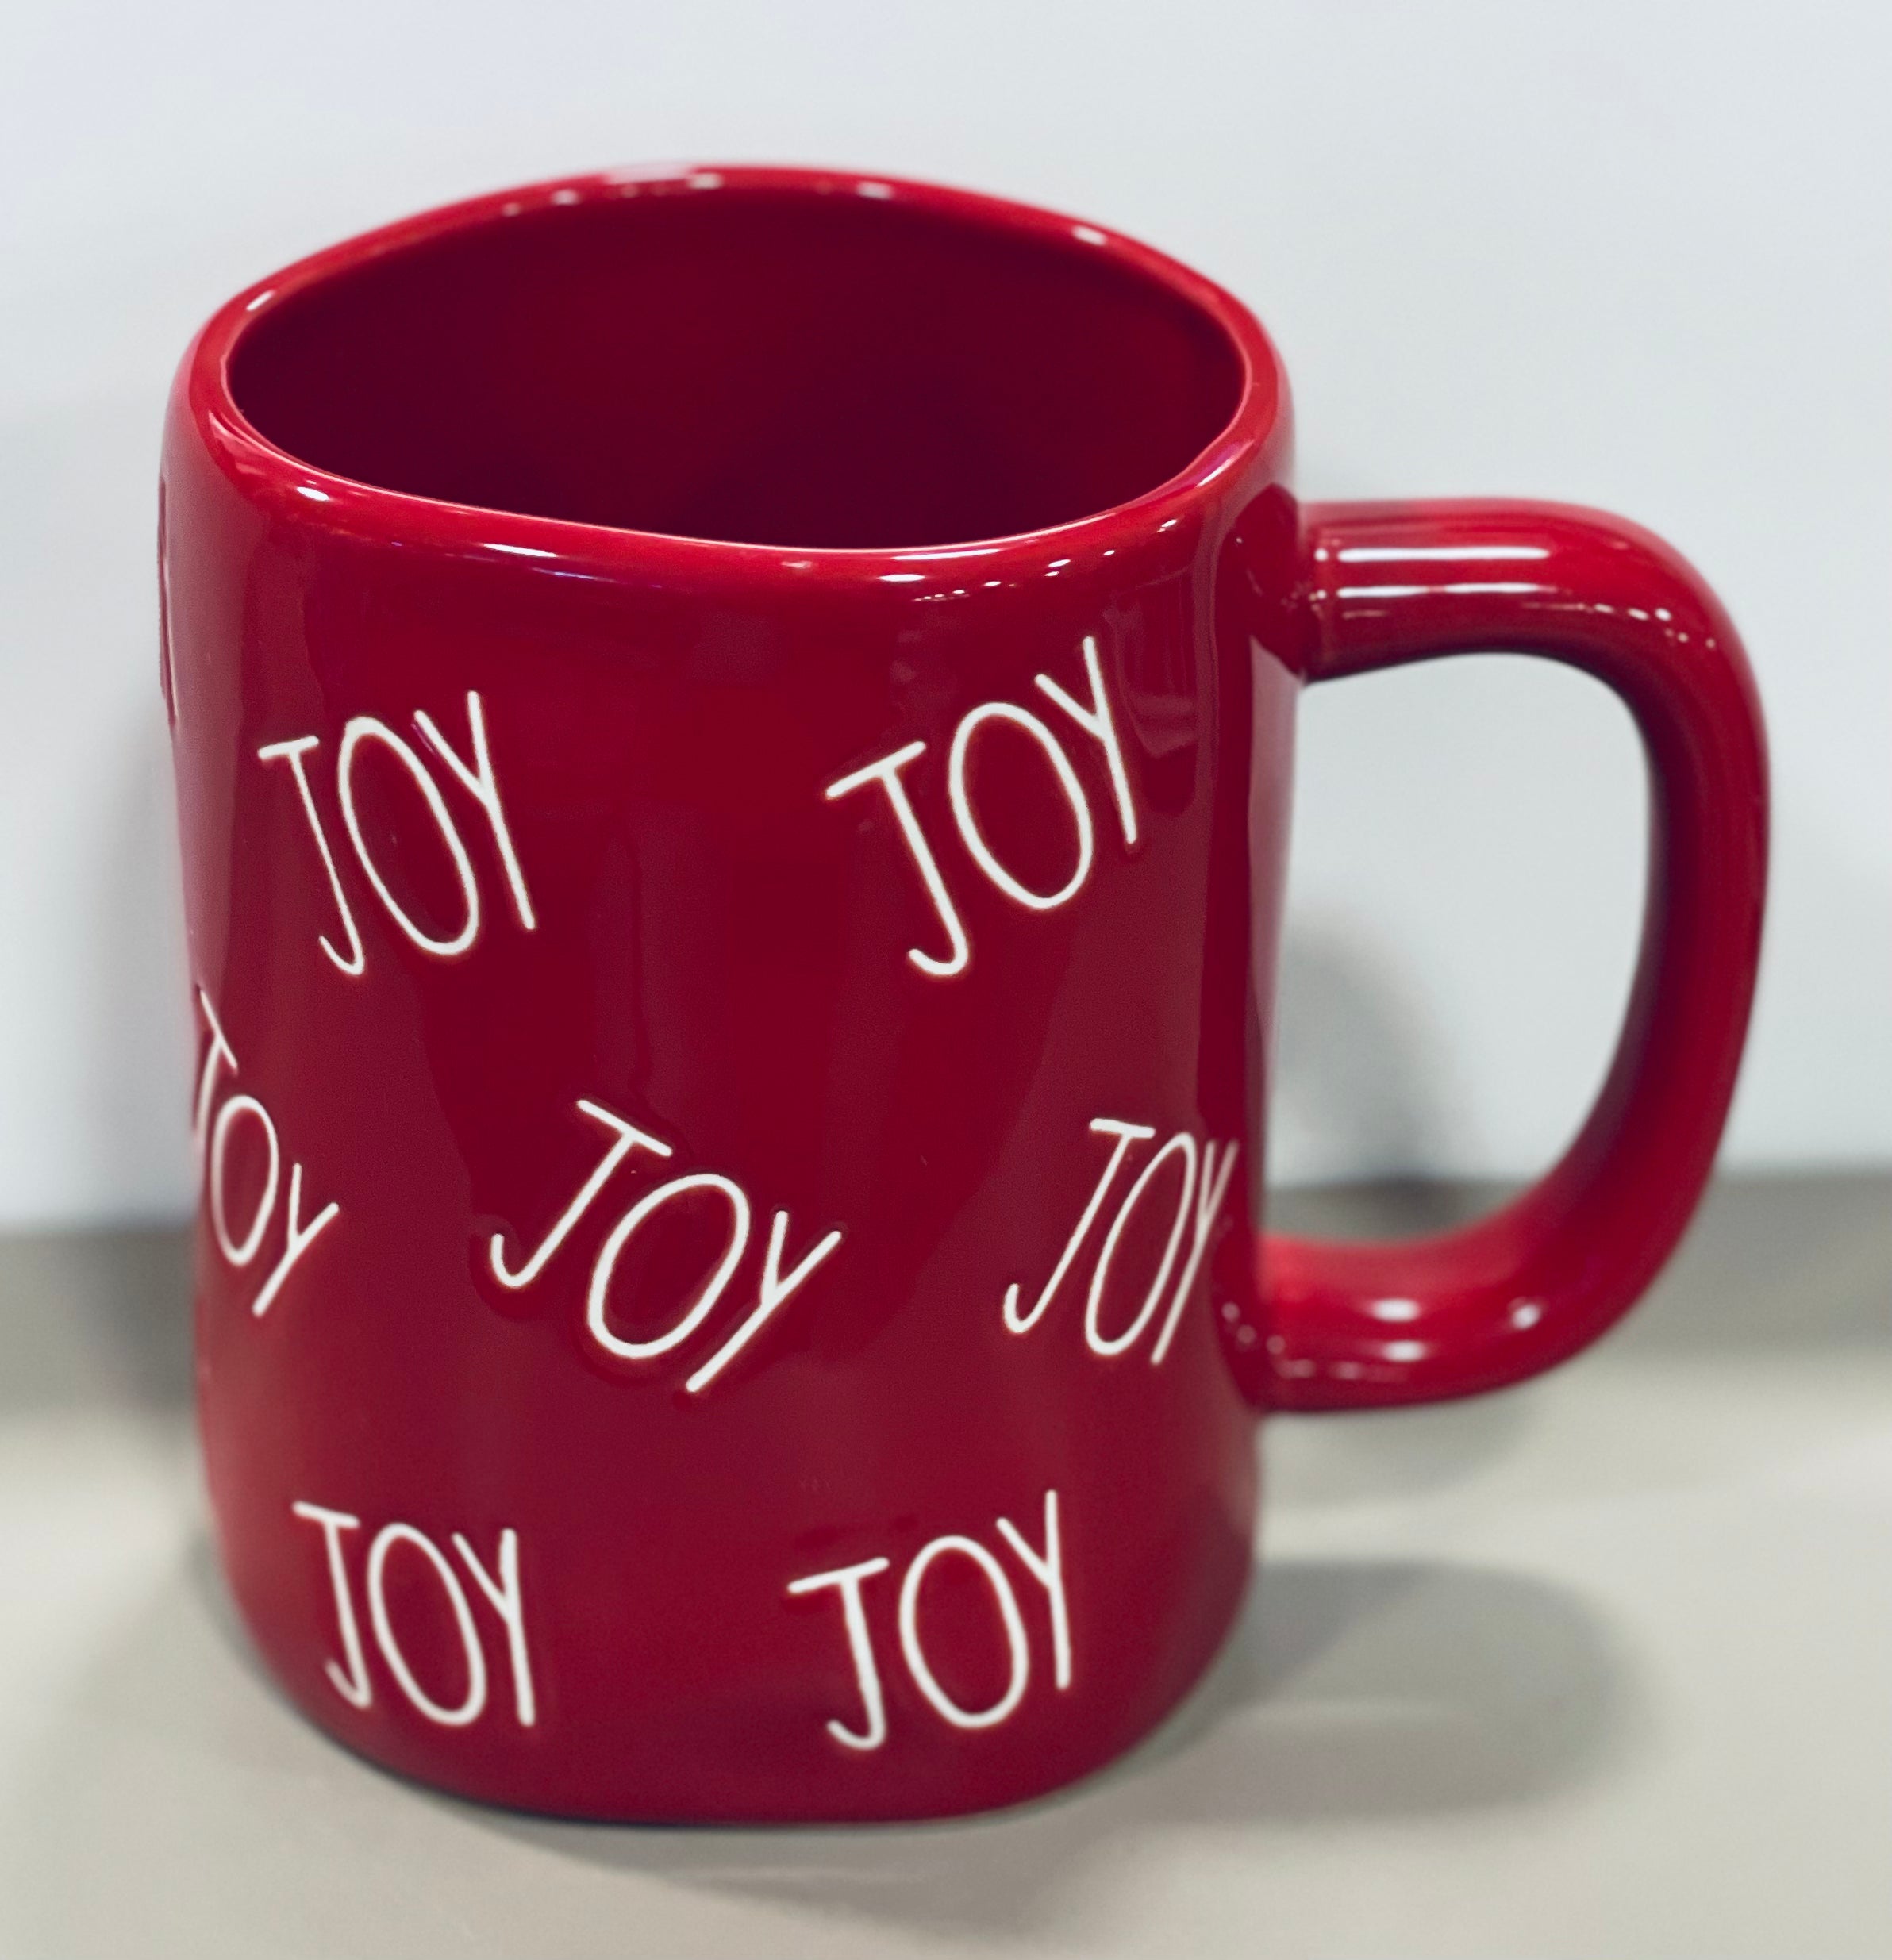 Comfort & Joy – Red Christmas Mug